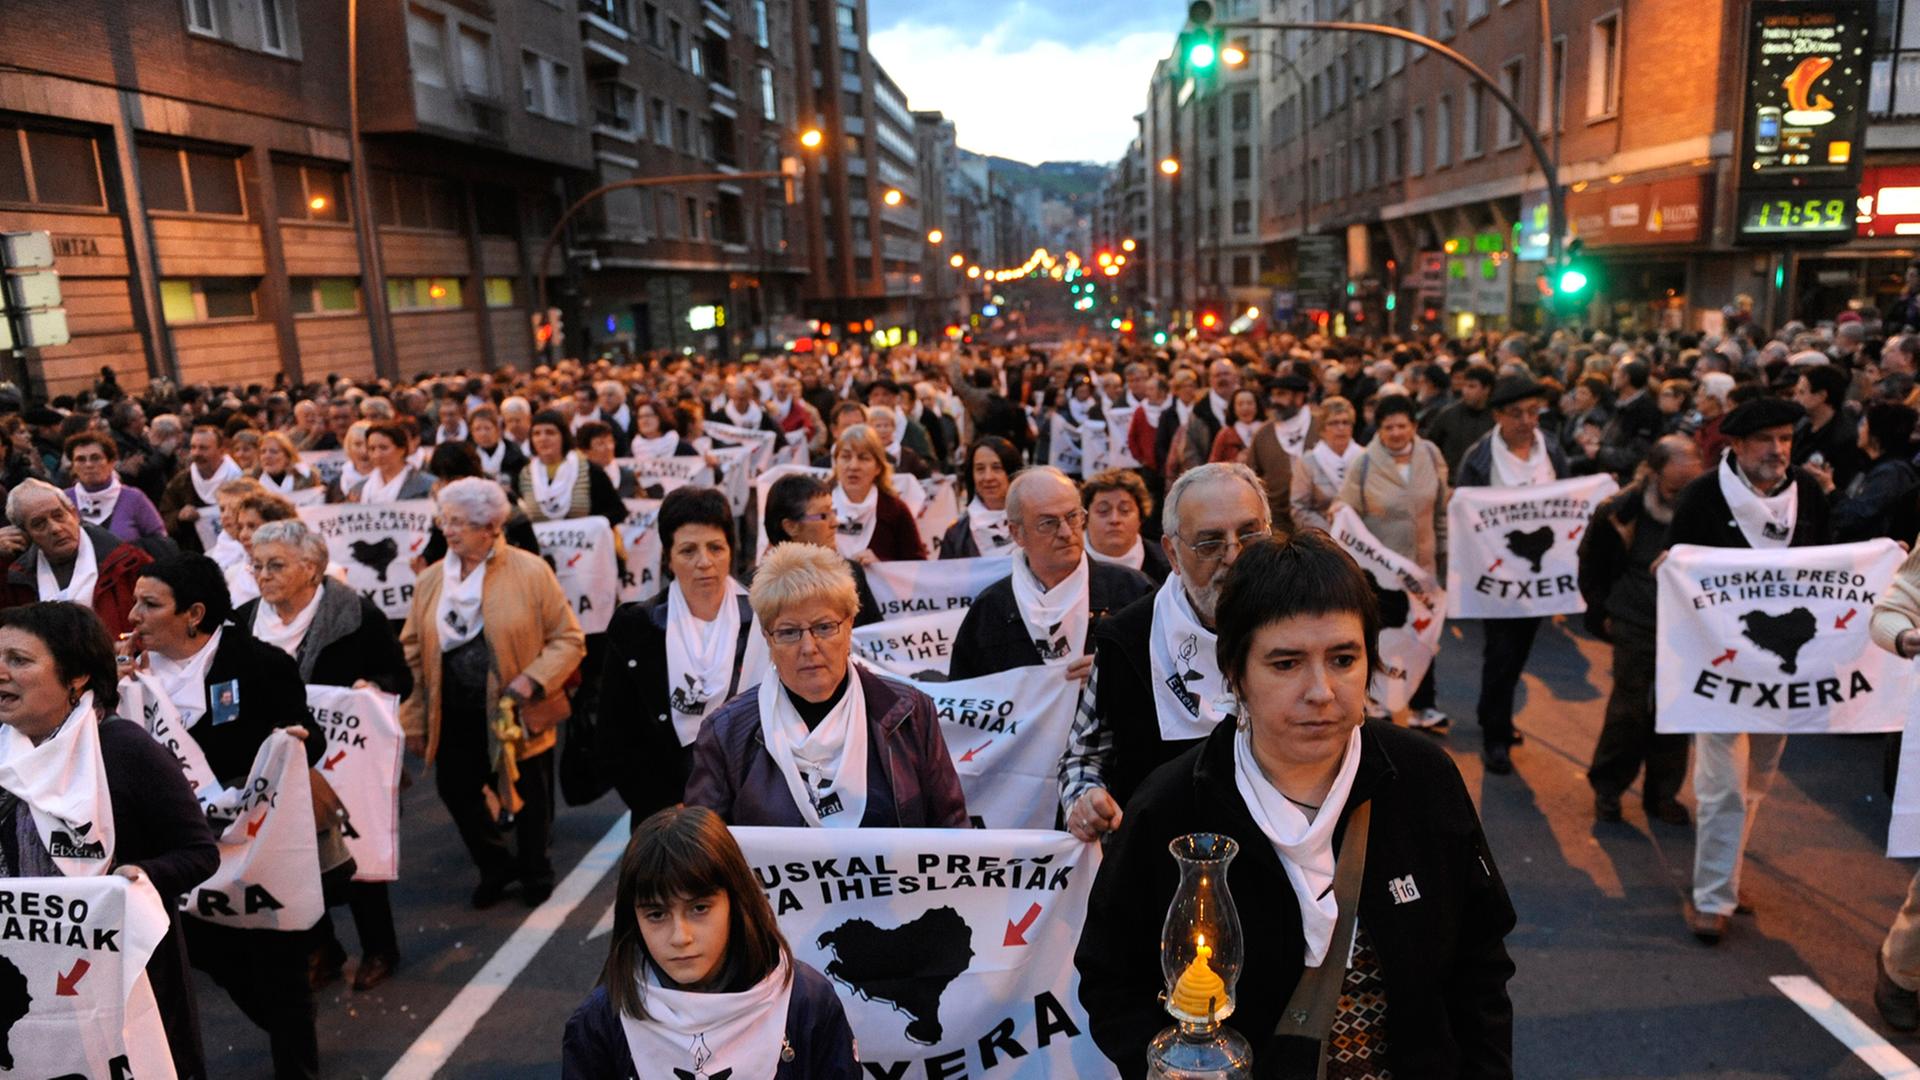 Demonstranten im Dunkeln auf einer Straße, die weiße Banner und Kerzen halten, auf den Bannern ist in baskisch zu lesen: "Mit allen Rechten. Baskische Häftlinge zurück ins Baskenland."